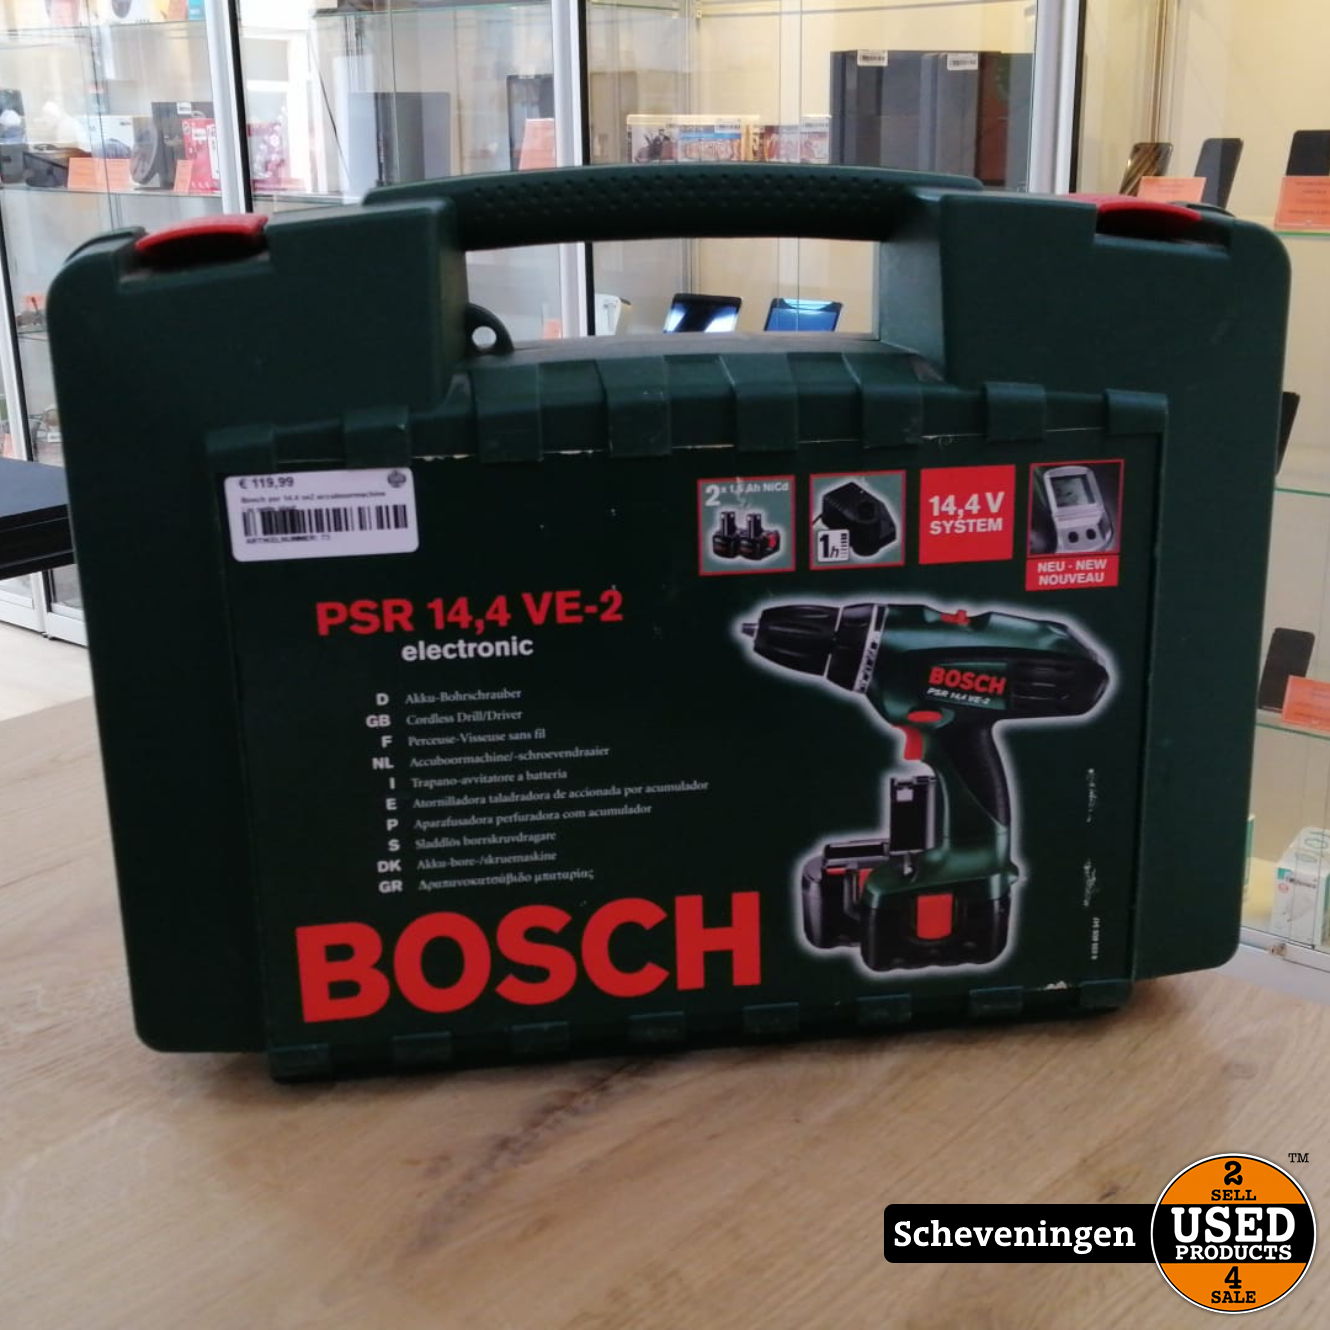 grip Berg kleding op Gluren Bosch PSR 14.4 VE2 Accuboormachine | in nette staat - Used Products  Scheveningen